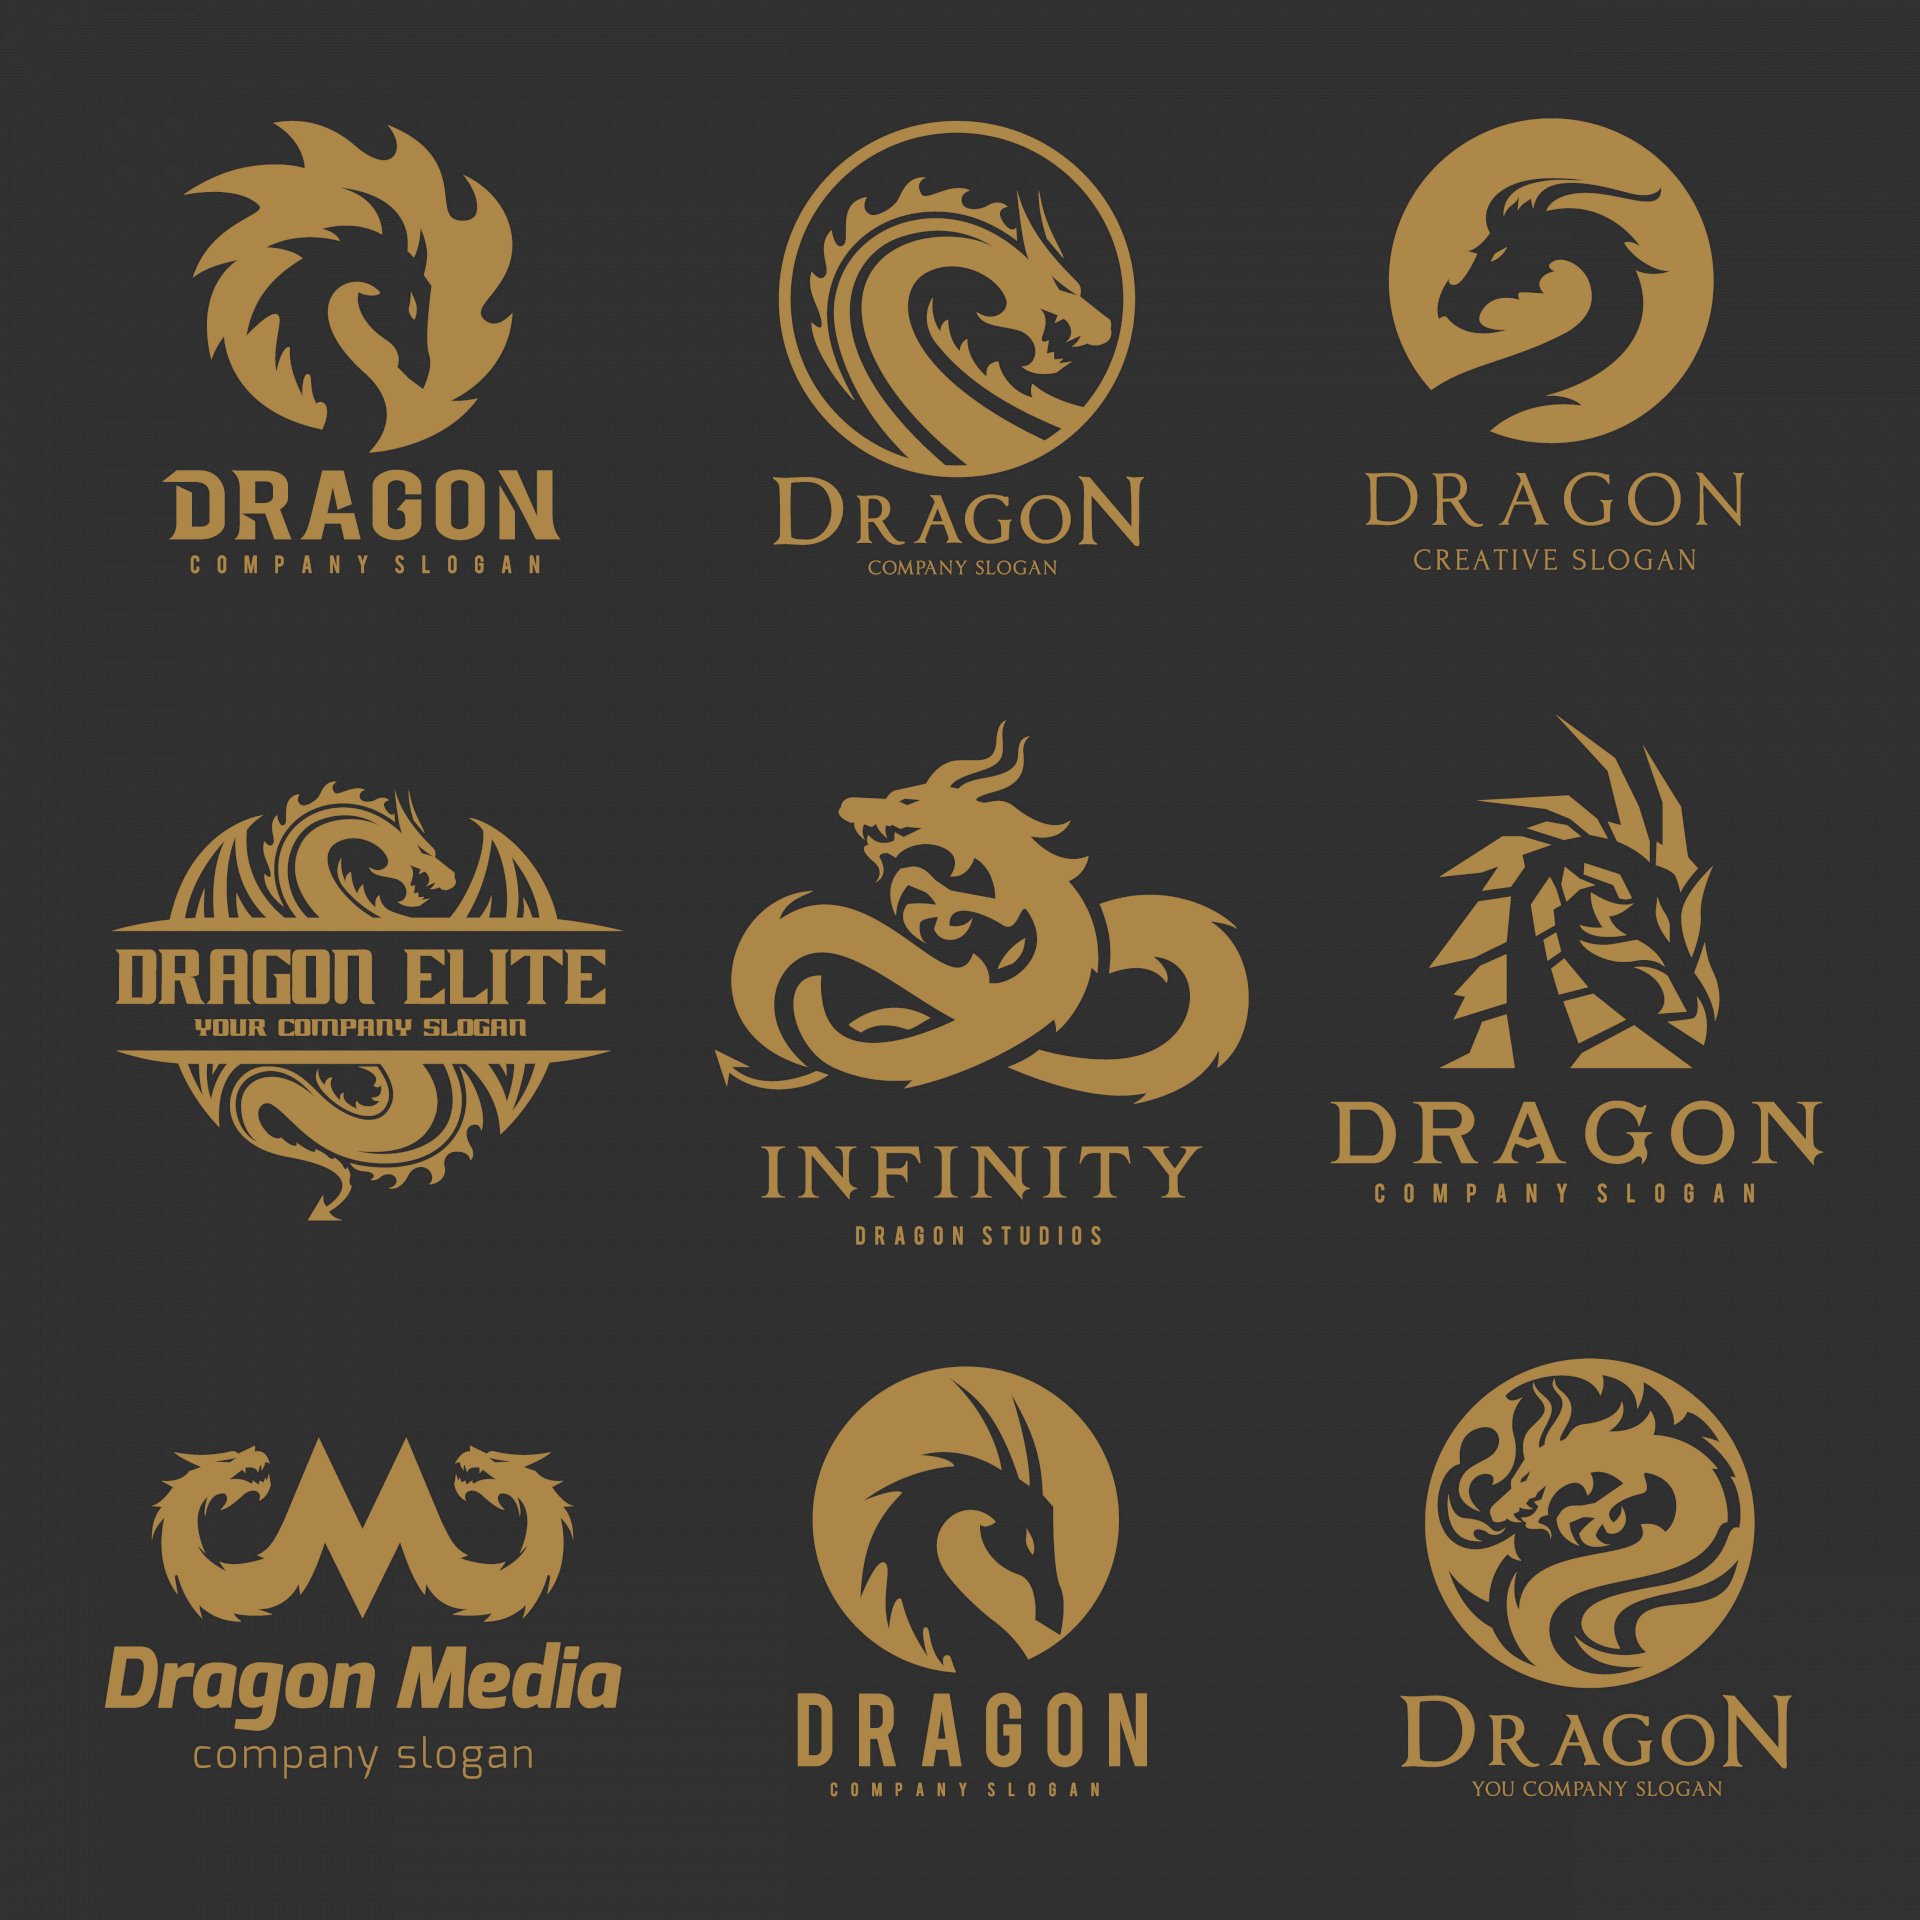 Logo rồng đẹp thường được sử dụng để đại diện cho sự mạnh mẽ và quyền lực. Nếu bạn là một nhà doanh nghiệp hoặc cần thiết kế hàng hóa với hình ảnh rồng, hãy xem qua các mẫu logo rồng đẹp và đa dạng để tìm kiếm ý tưởng sáng tạo.